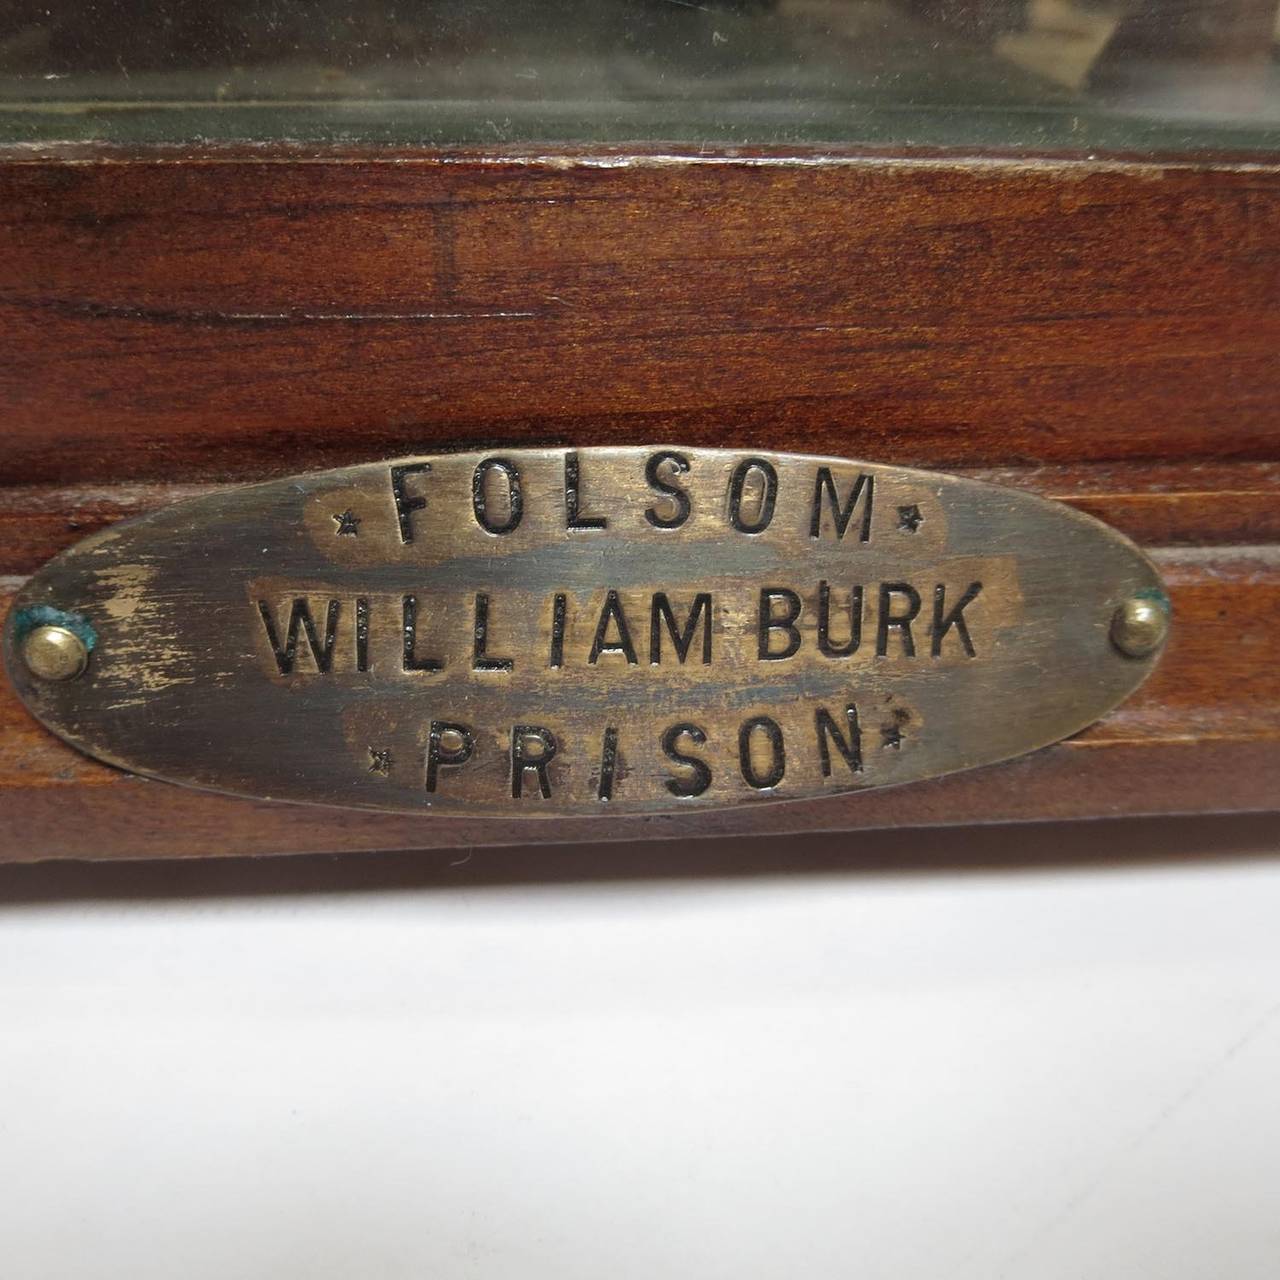 Folsom Prison Inmate Folk Art Wood Shop Diorama 4